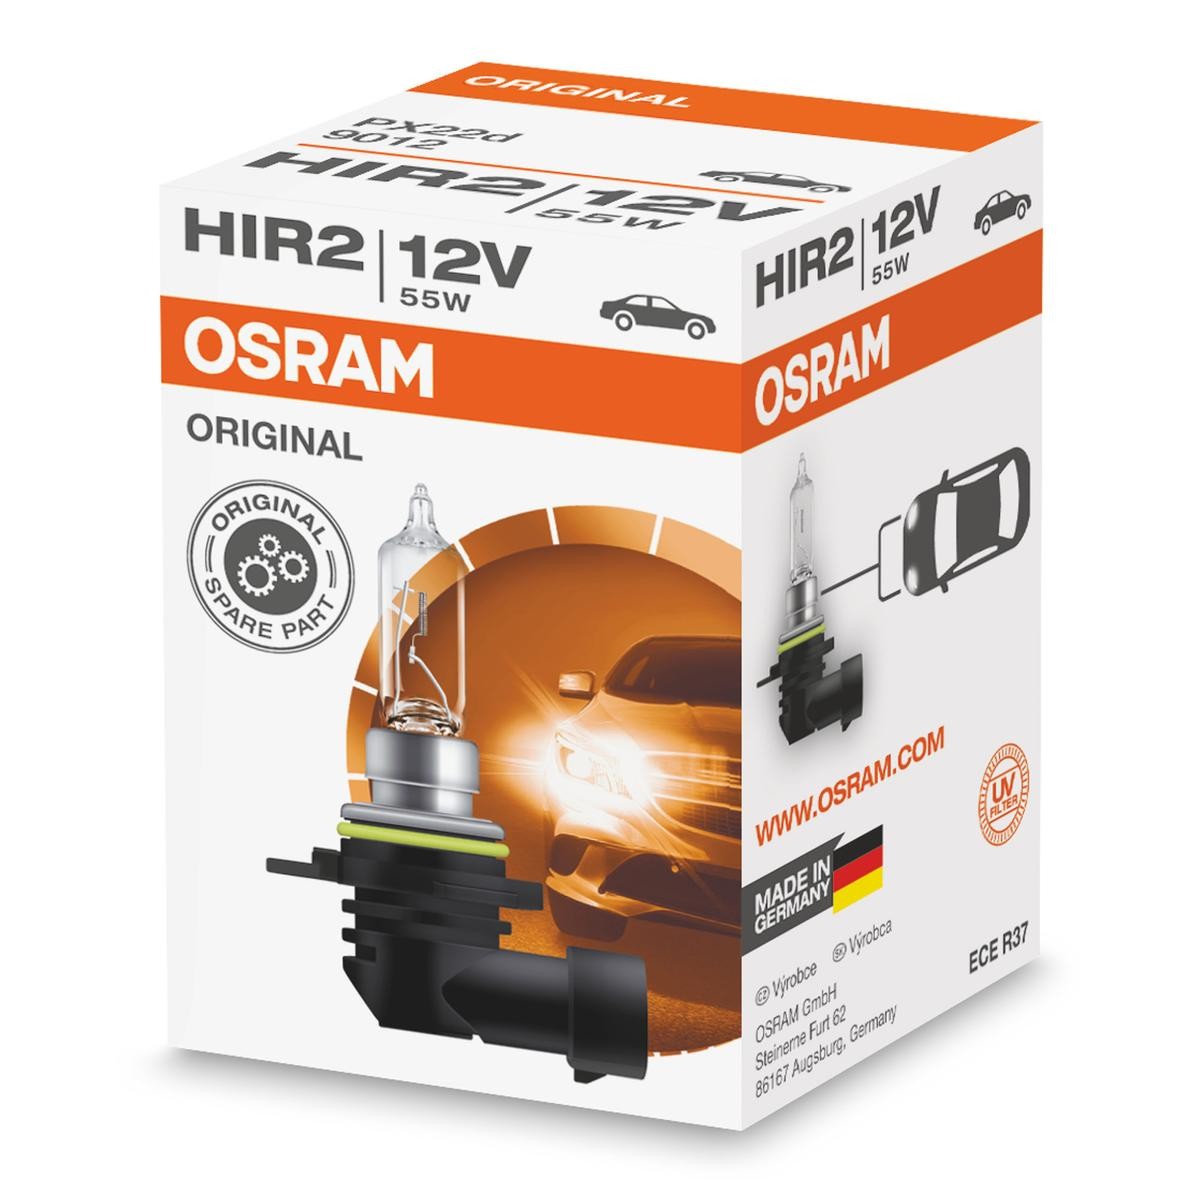 OSRAM 9012 Hovedlyskaster pære HIR2 12V 55W PX22d 3200K Halogen ORIGINAL